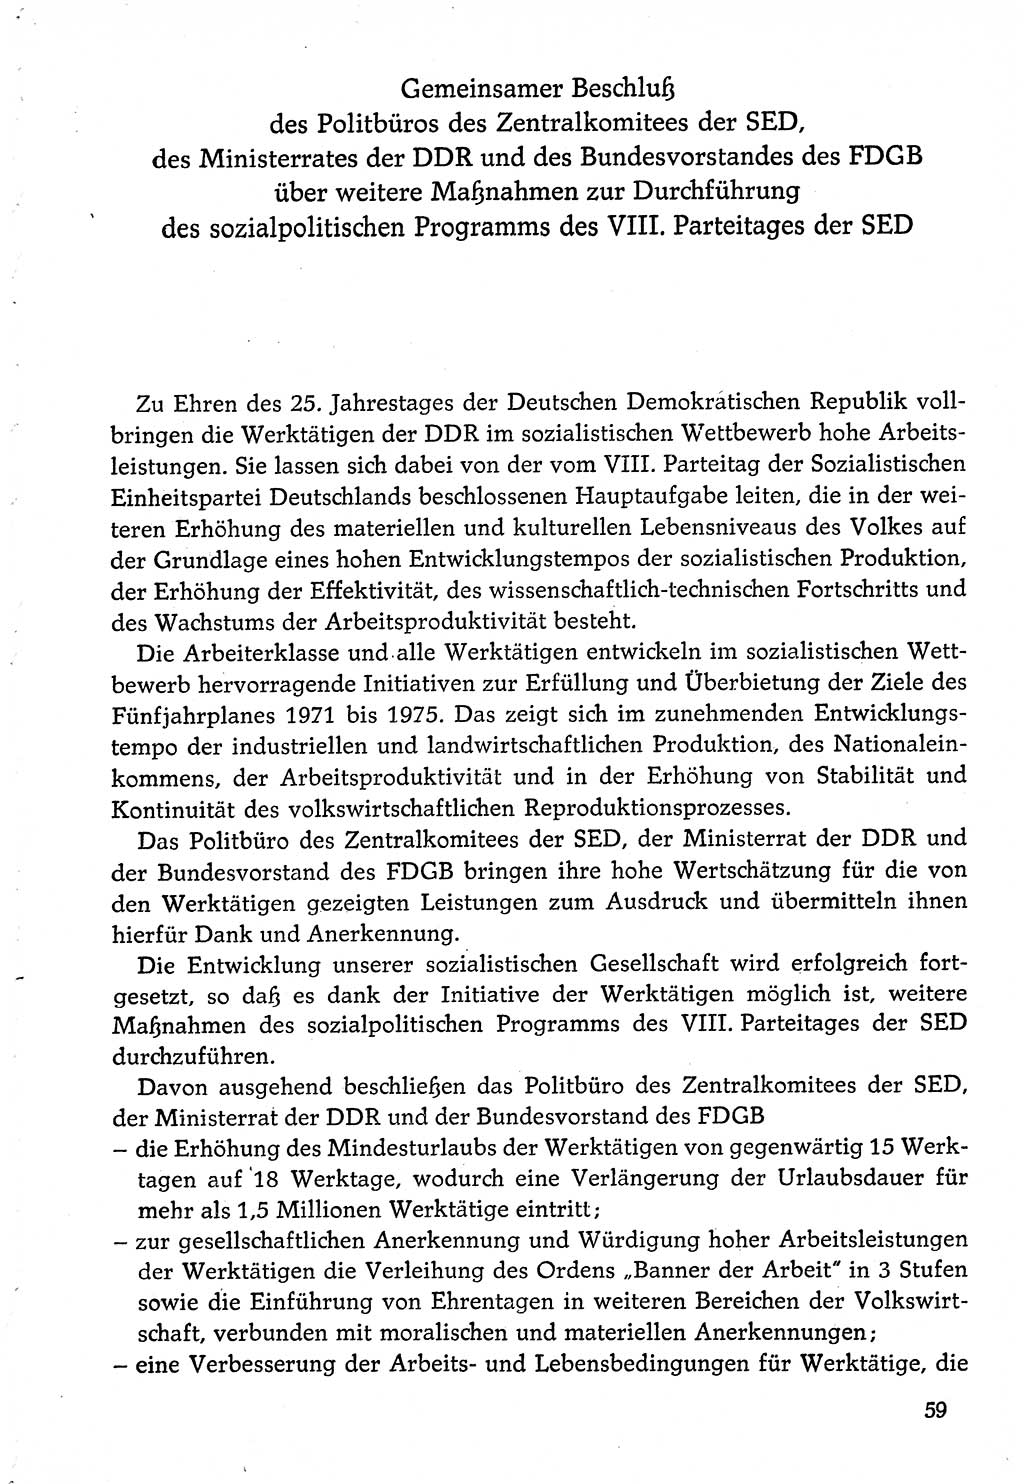 Dokumente der Sozialistischen Einheitspartei Deutschlands (SED) [Deutsche Demokratische Republik (DDR)] 1974-1975, Seite 59 (Dok. SED DDR 1978, Bd. ⅩⅤ, S. 59)